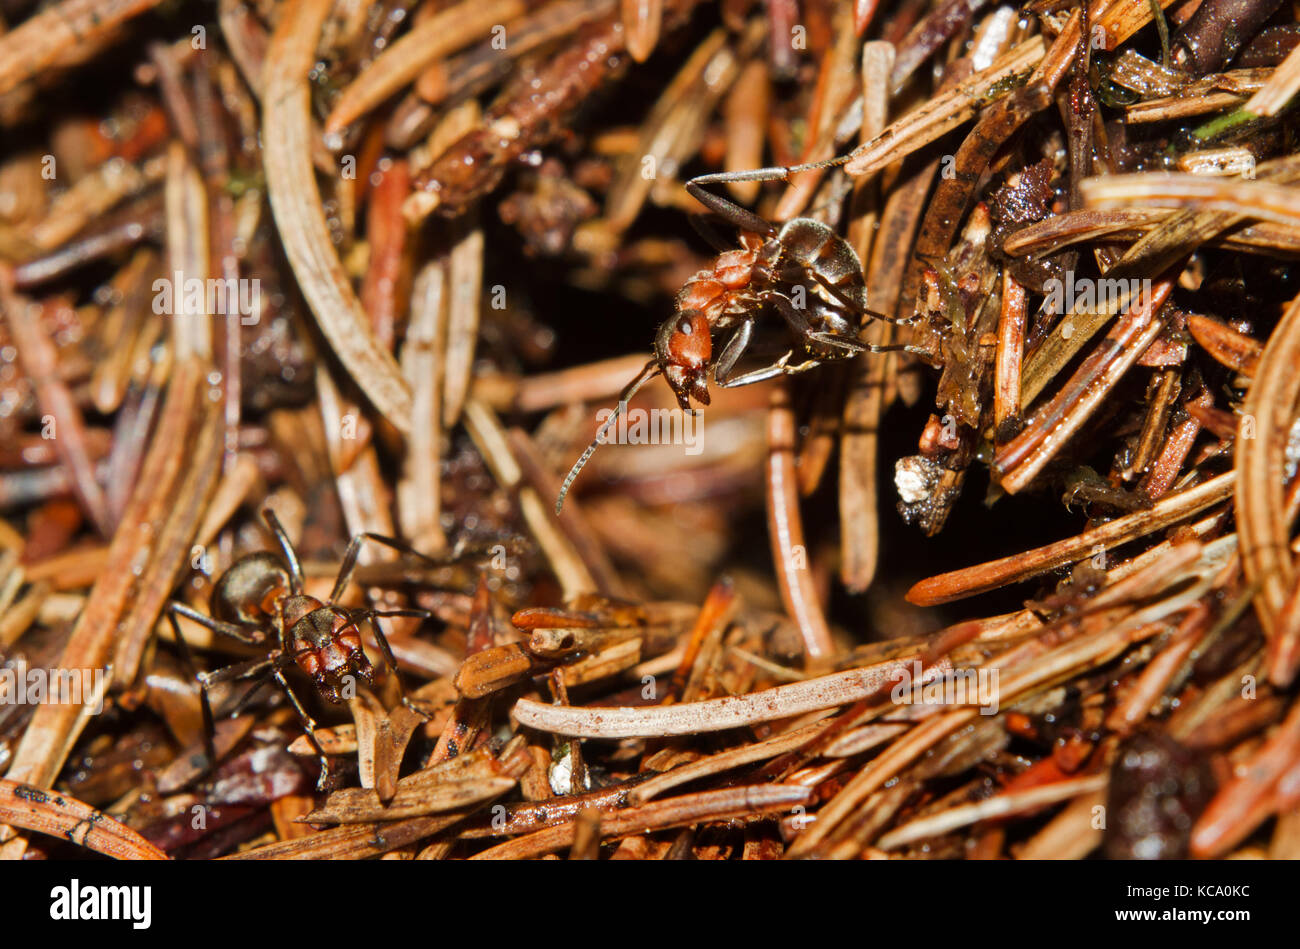 Hormiga de madera roja haciendo una actitud agresiva, listo para pulverizar ácido fórmico en un atacante de su nido Foto de stock